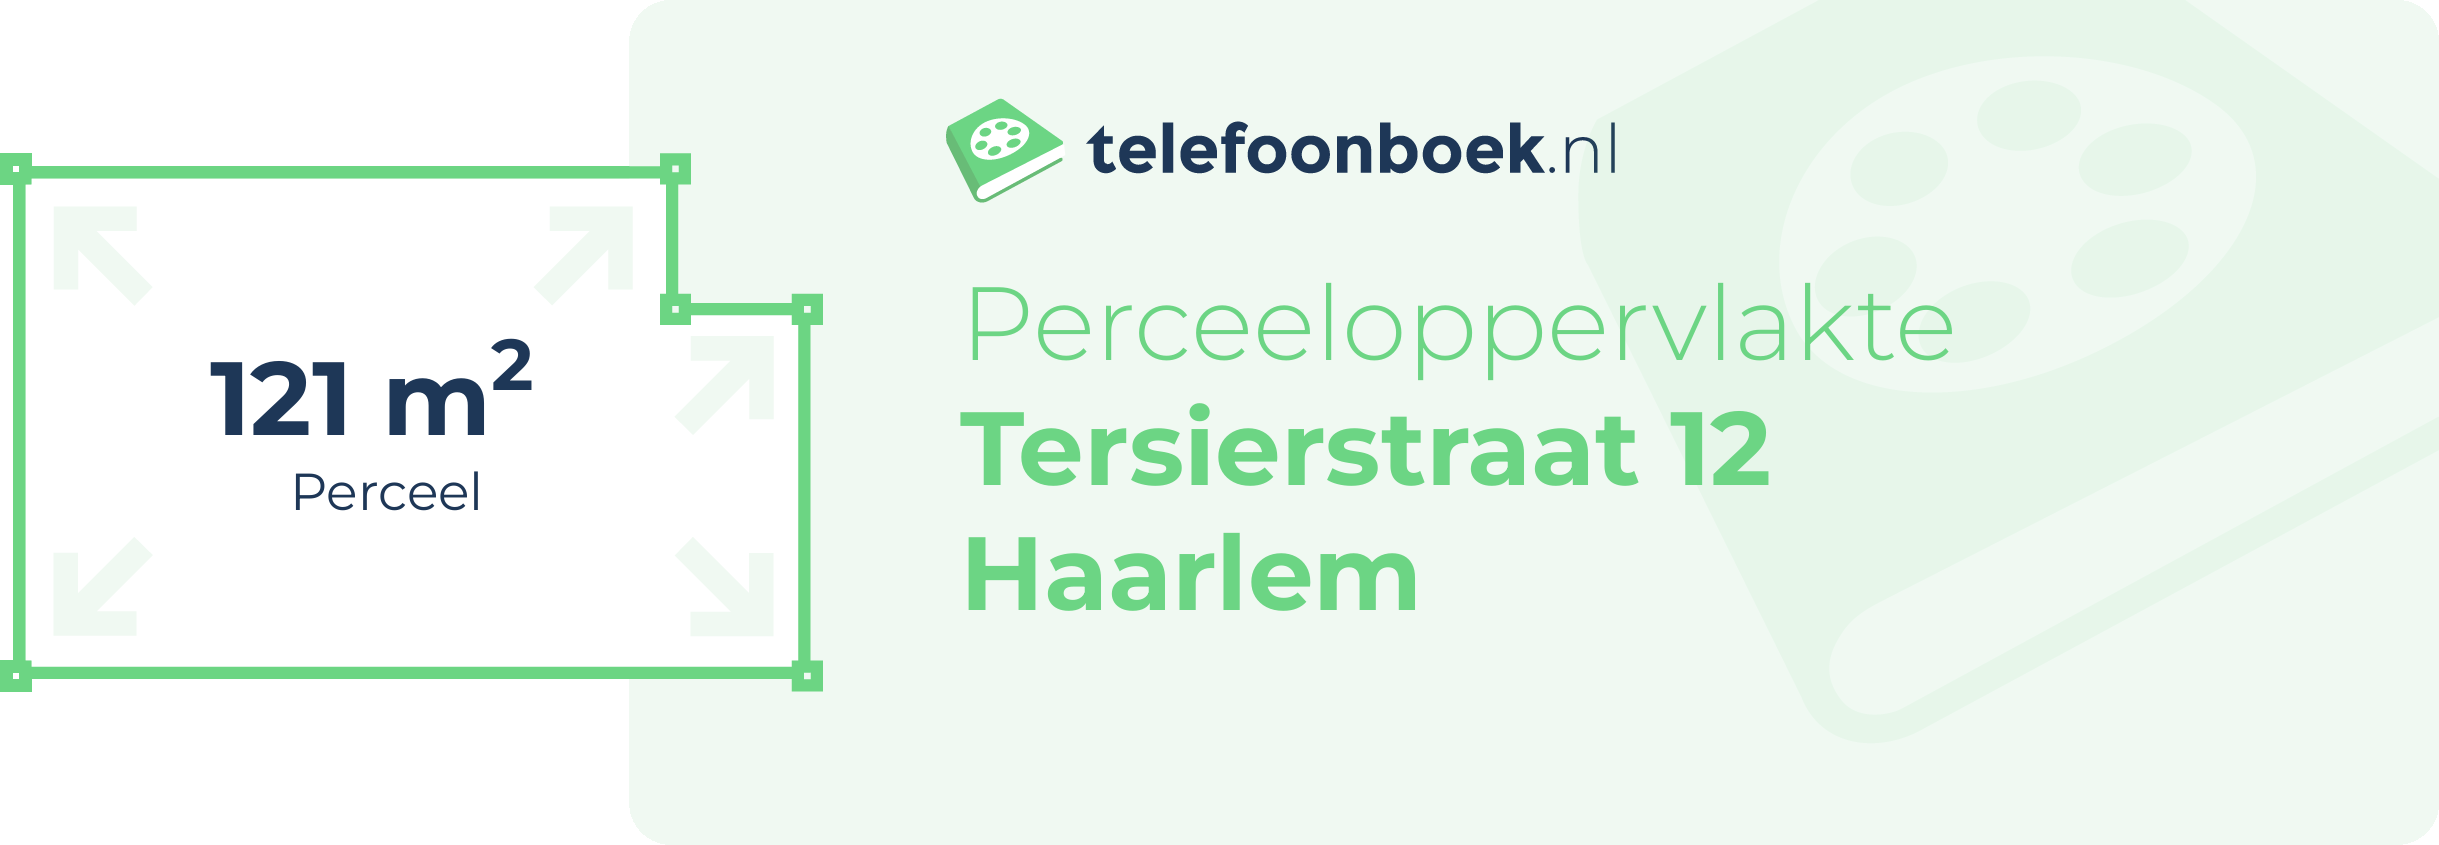 Perceeloppervlakte Tersierstraat 12 Haarlem